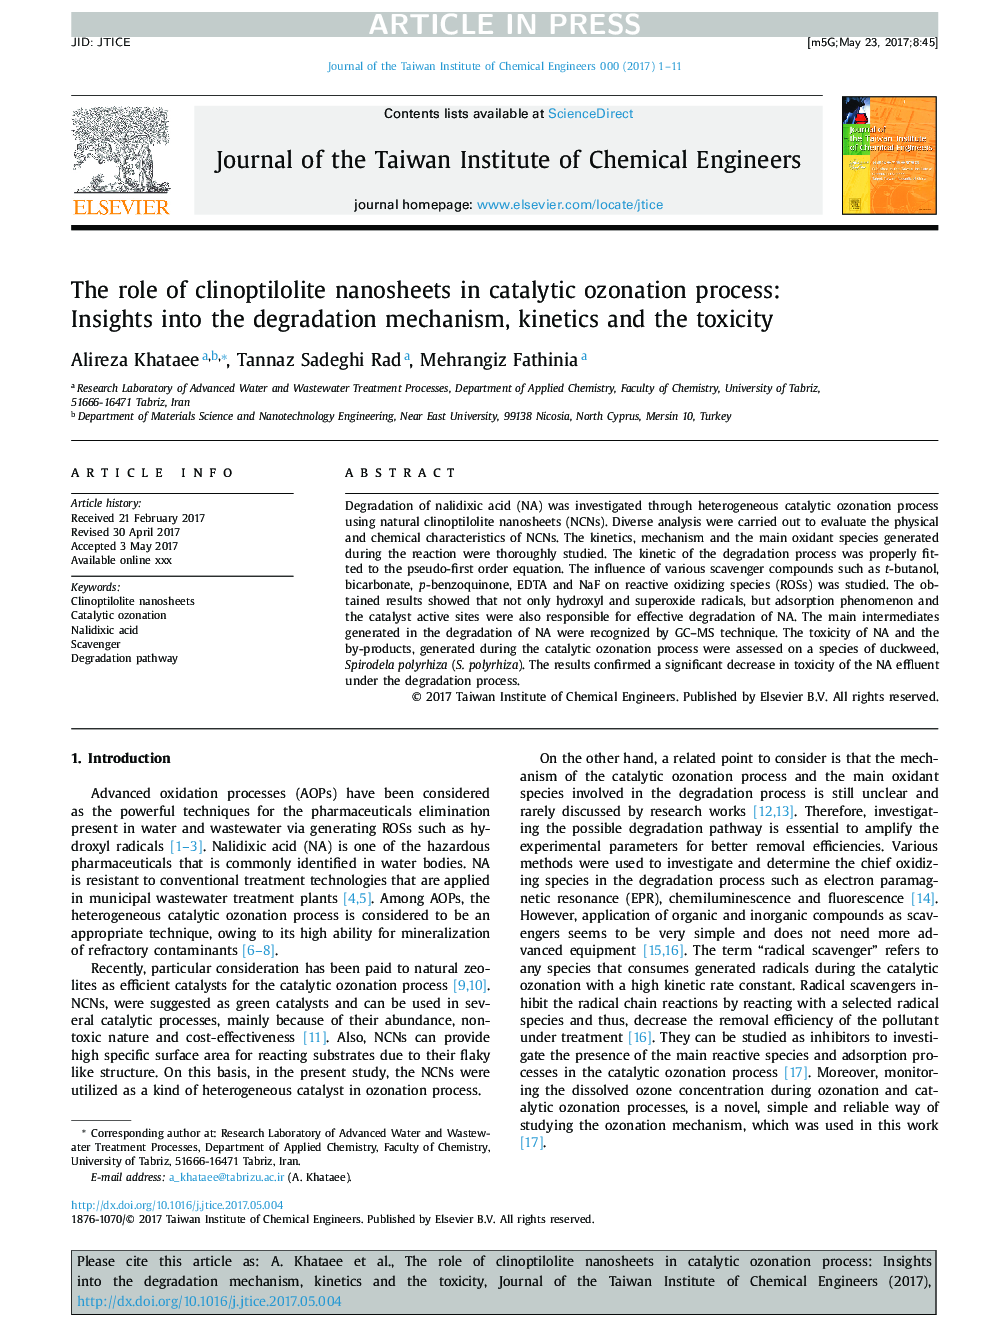 نقش نانوساختارهای کلینوپتیلولیت در فرایند اتانسیون کاتالیزوری: بینش مکانیزم تخریب، سینتیک و سمیت 